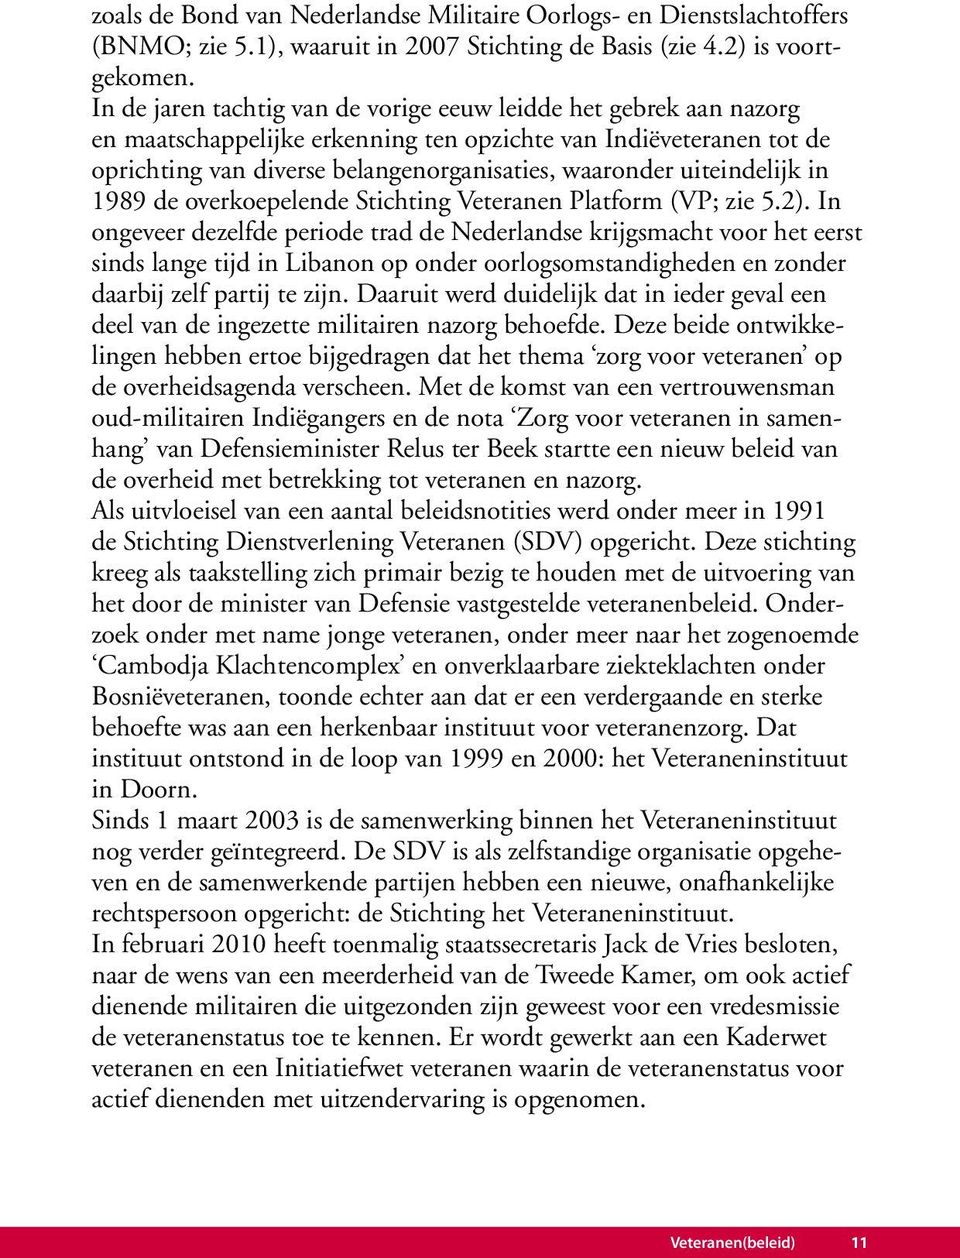 uiteindelijk in 1989 de overkoepelende Stichting Veteranen Platform (VP; zie 5.2).